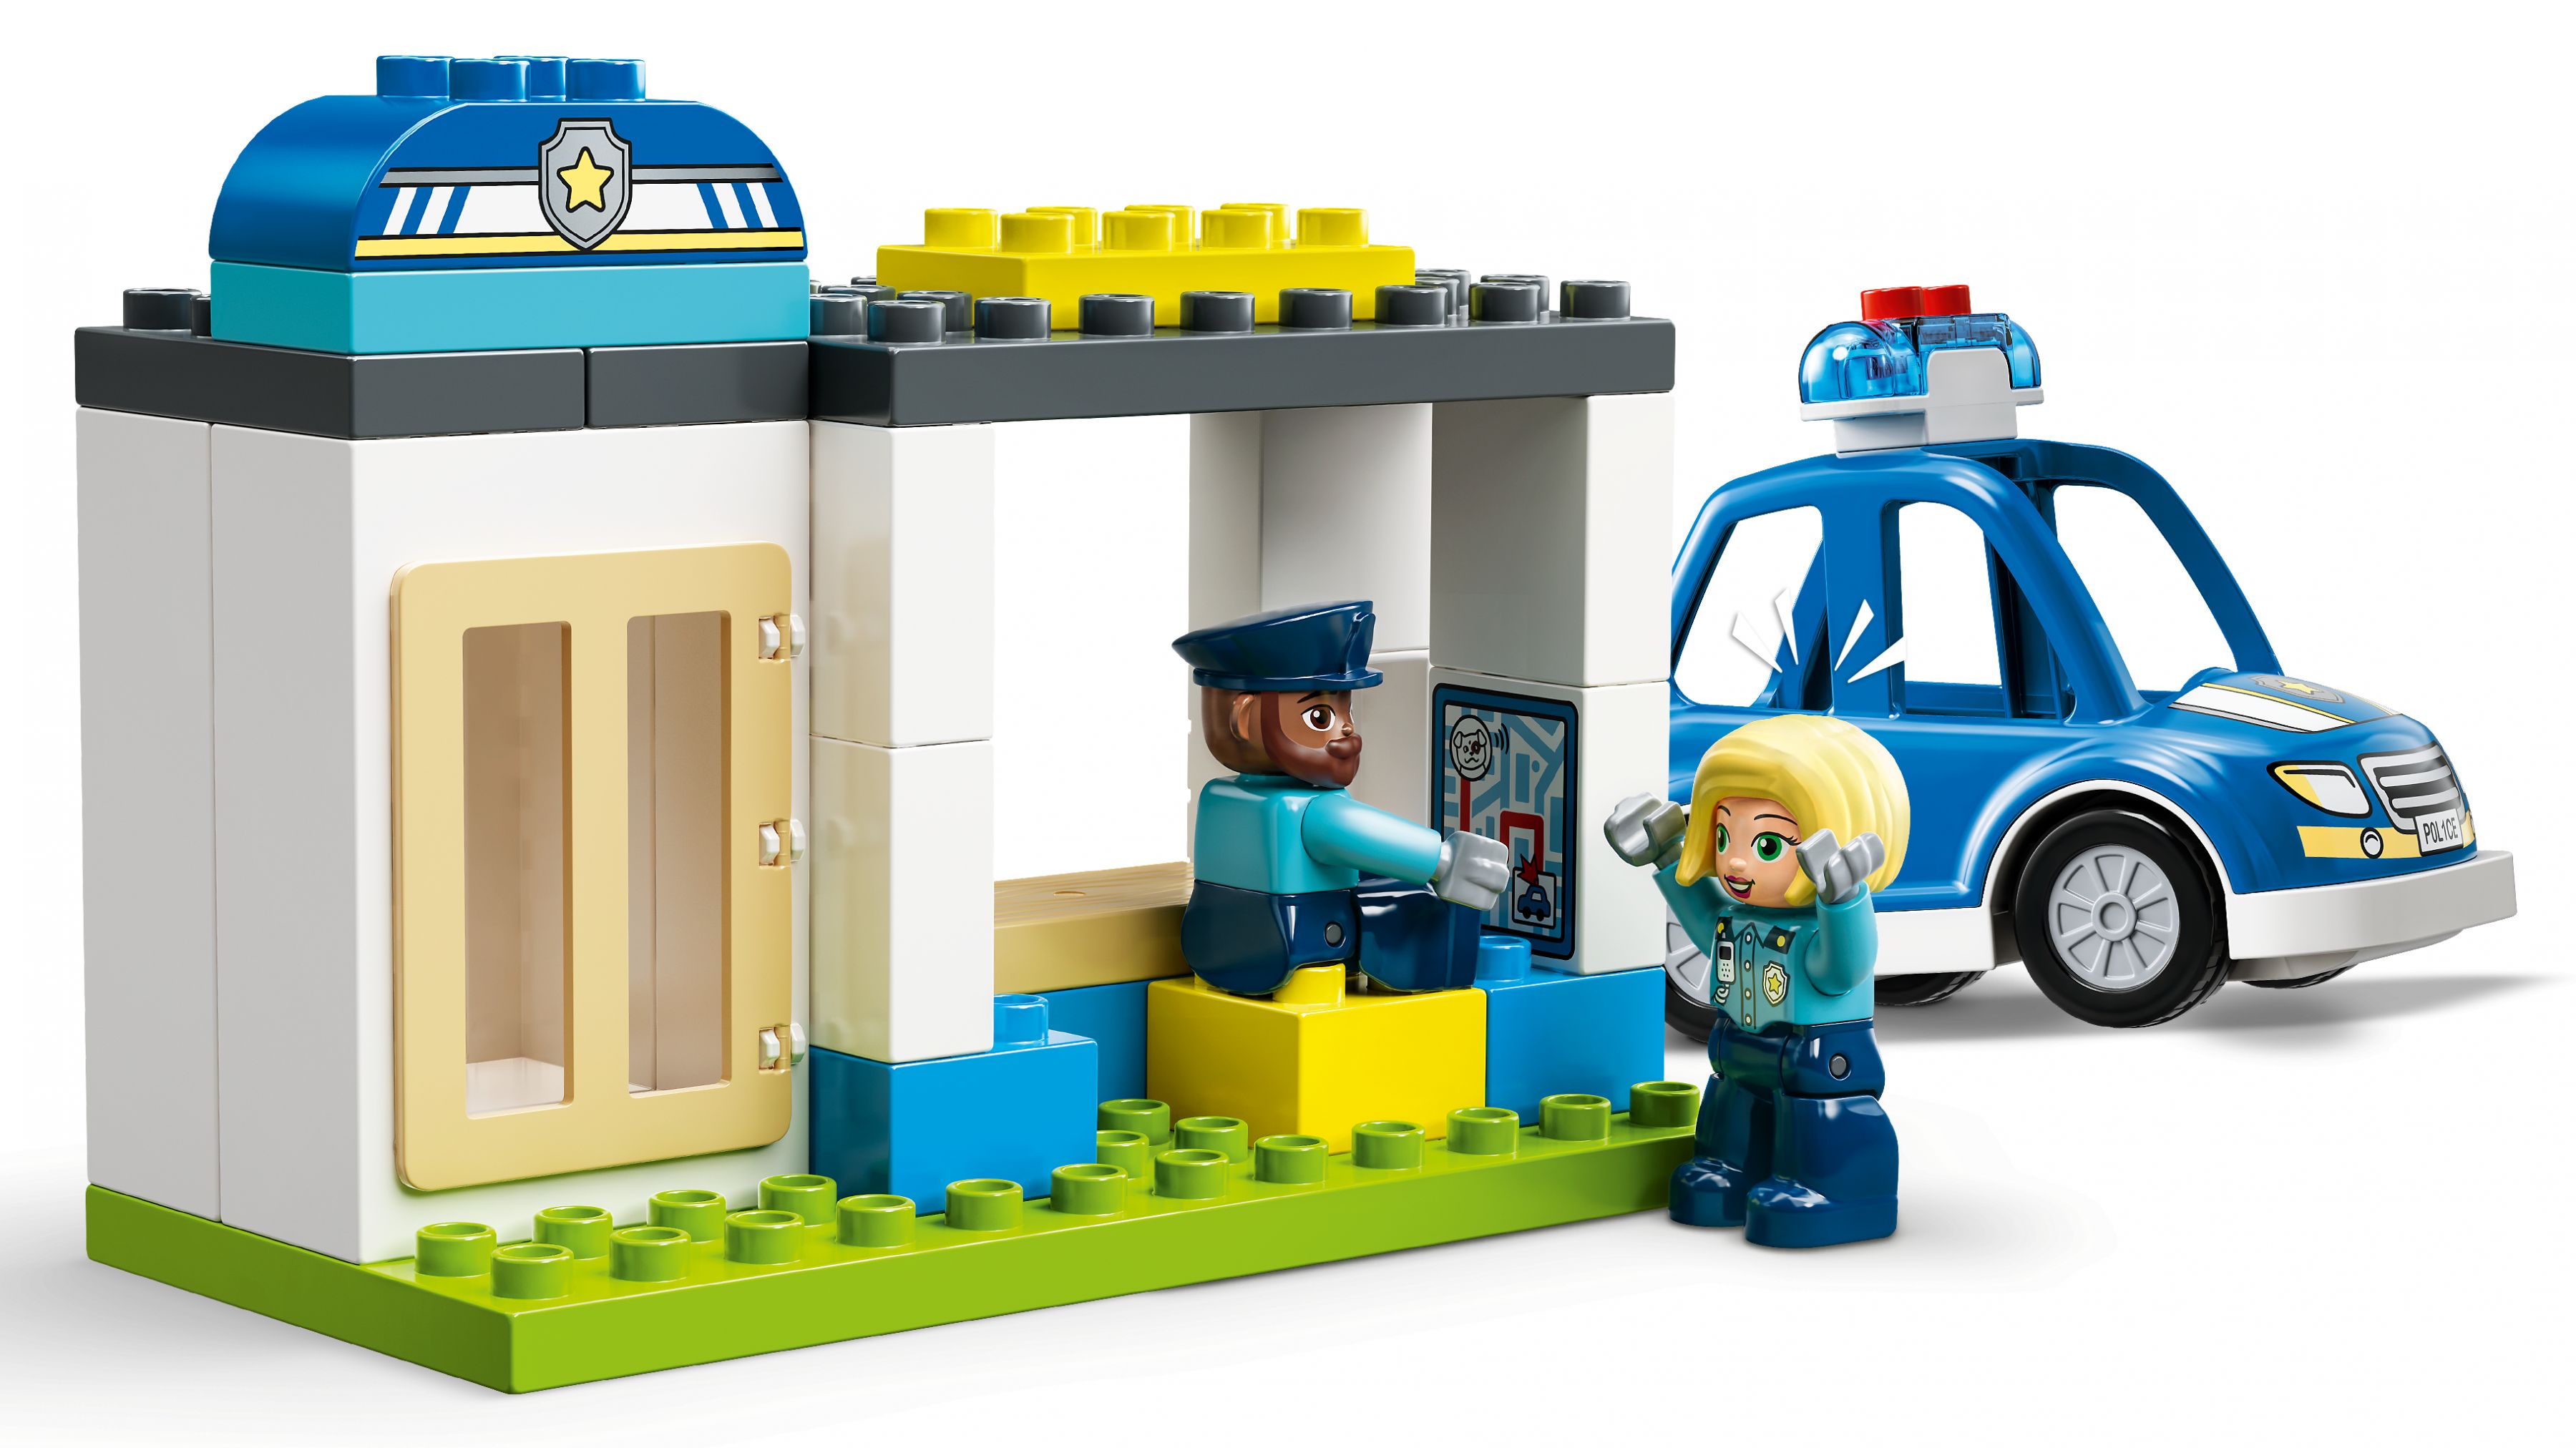 LEGO Duplo 10959 Polizeistation mit Hubschrauber LEGO_10959_WEB_SEC03_NOBG.jpg